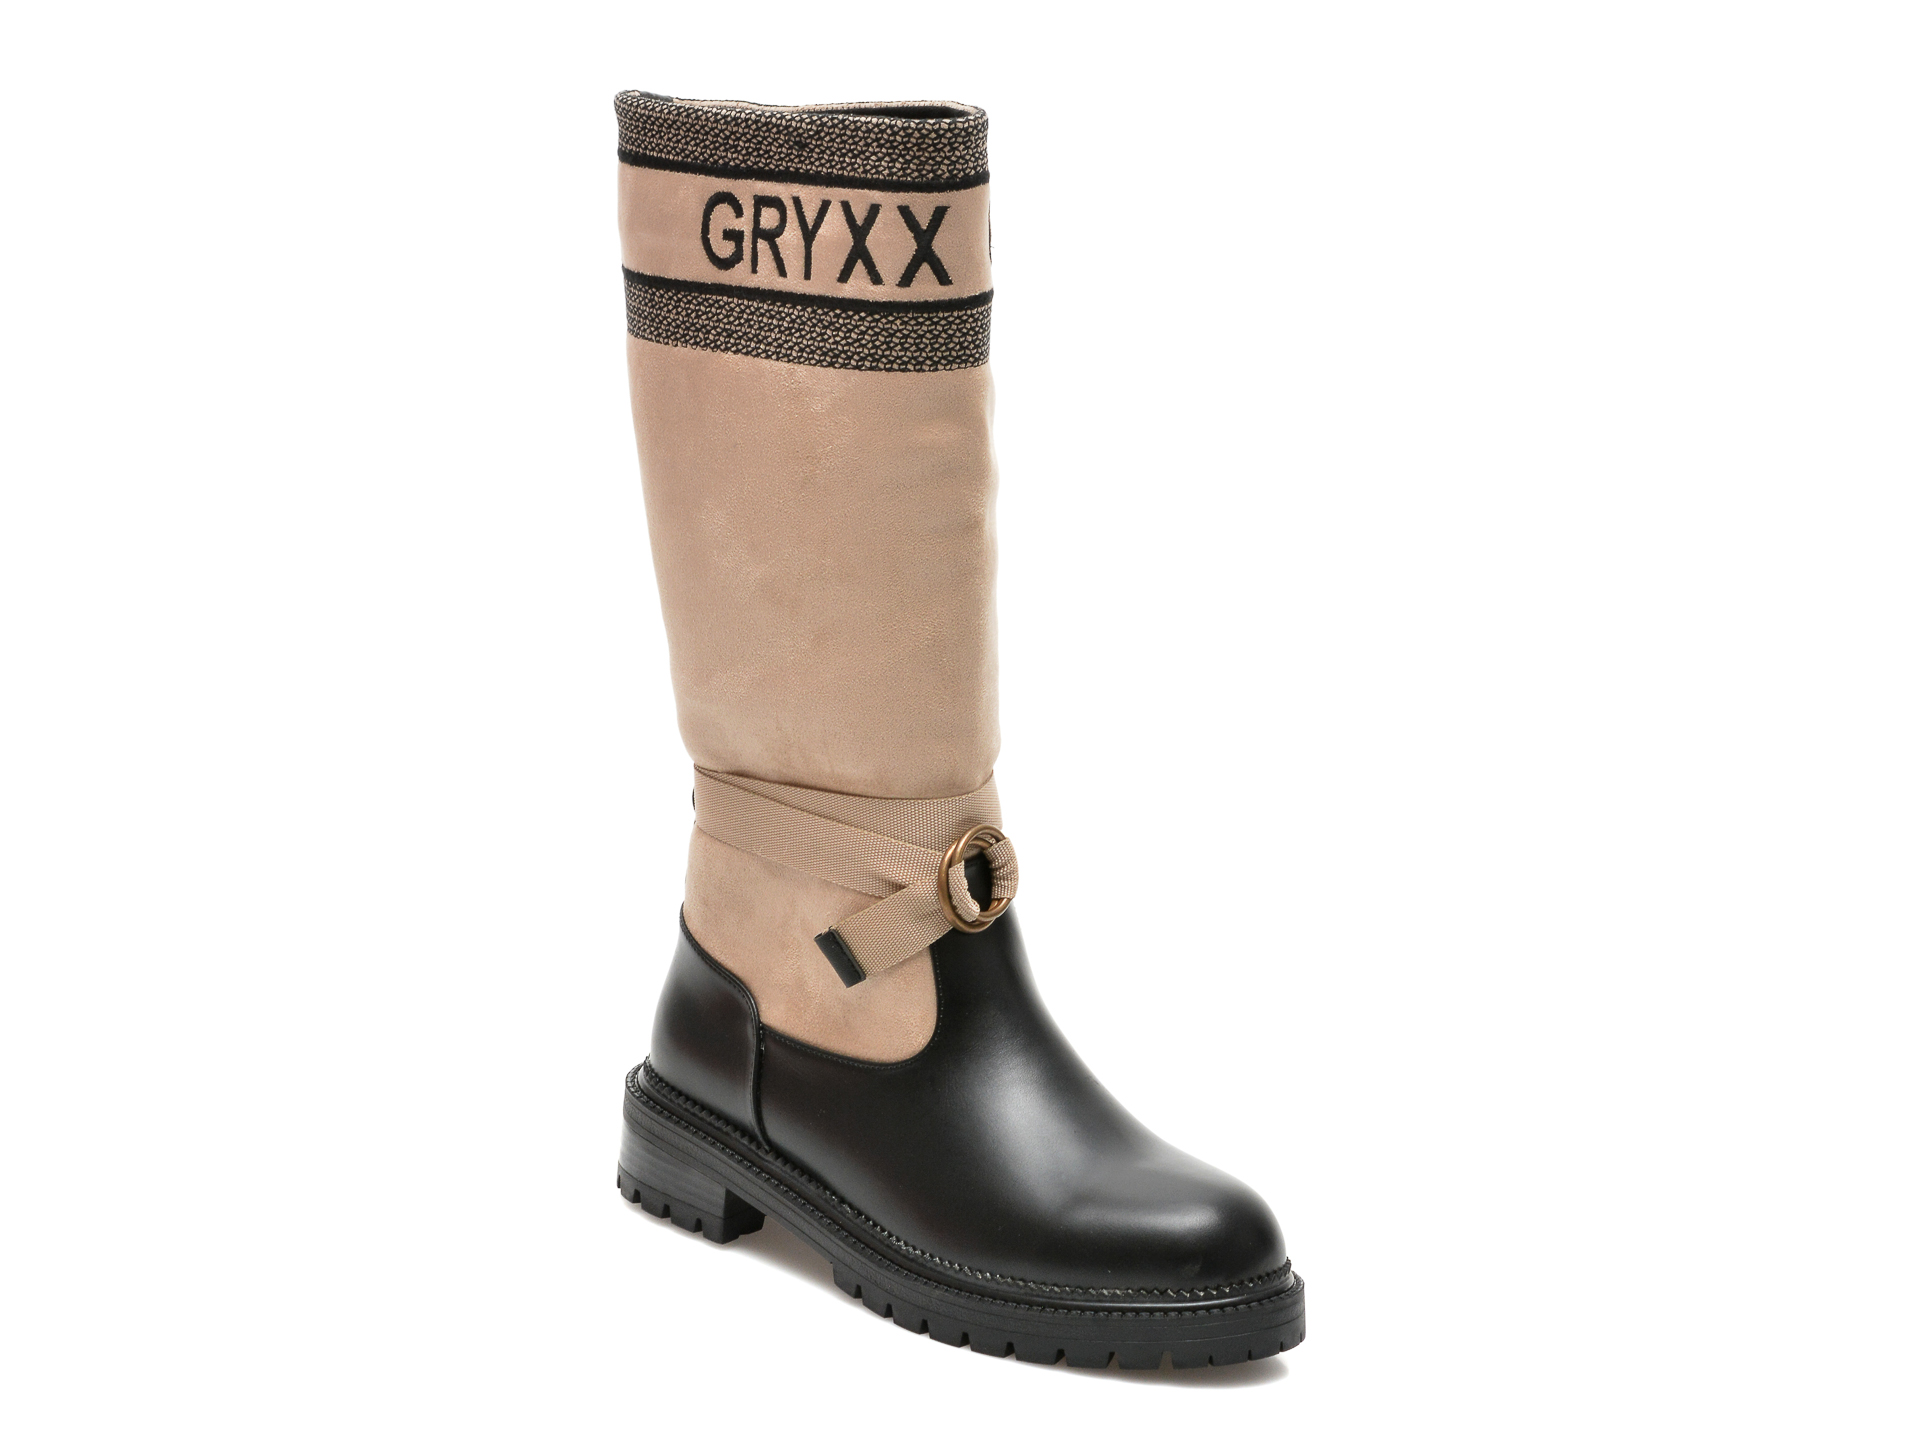 Cizme GRYXX negre, 7495B51, din material textil si piele ecologica Gryxx Gryxx